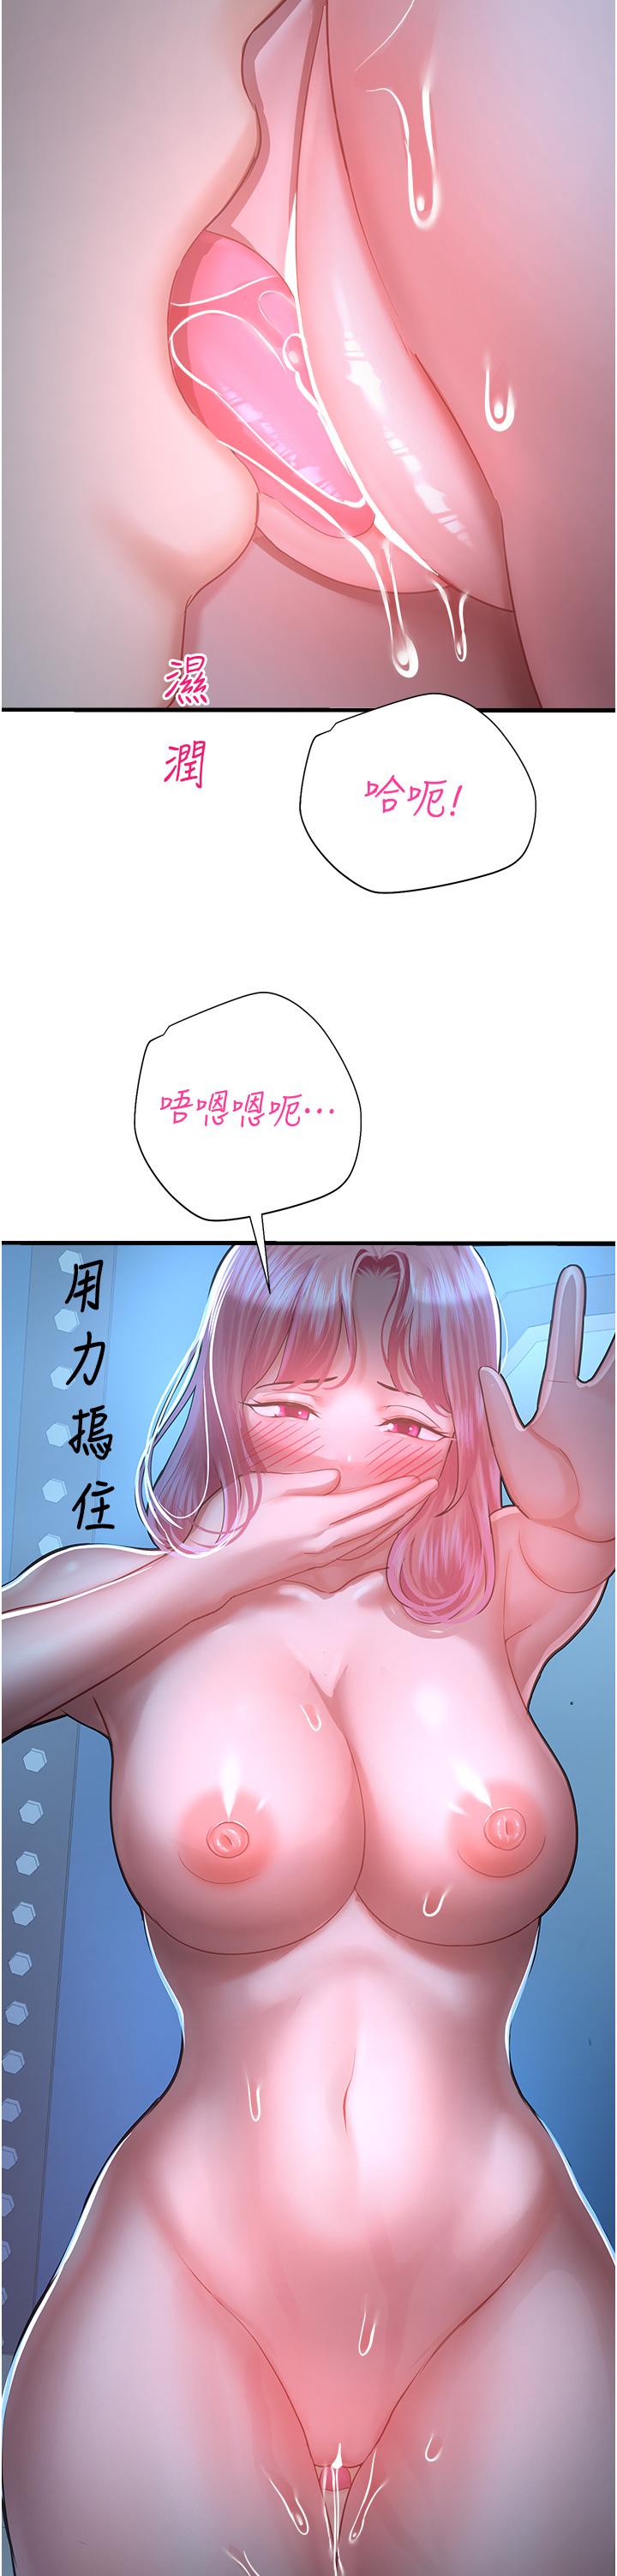 韩国污漫画 命運濕樂園 第18话-被染指的处女鲍 35